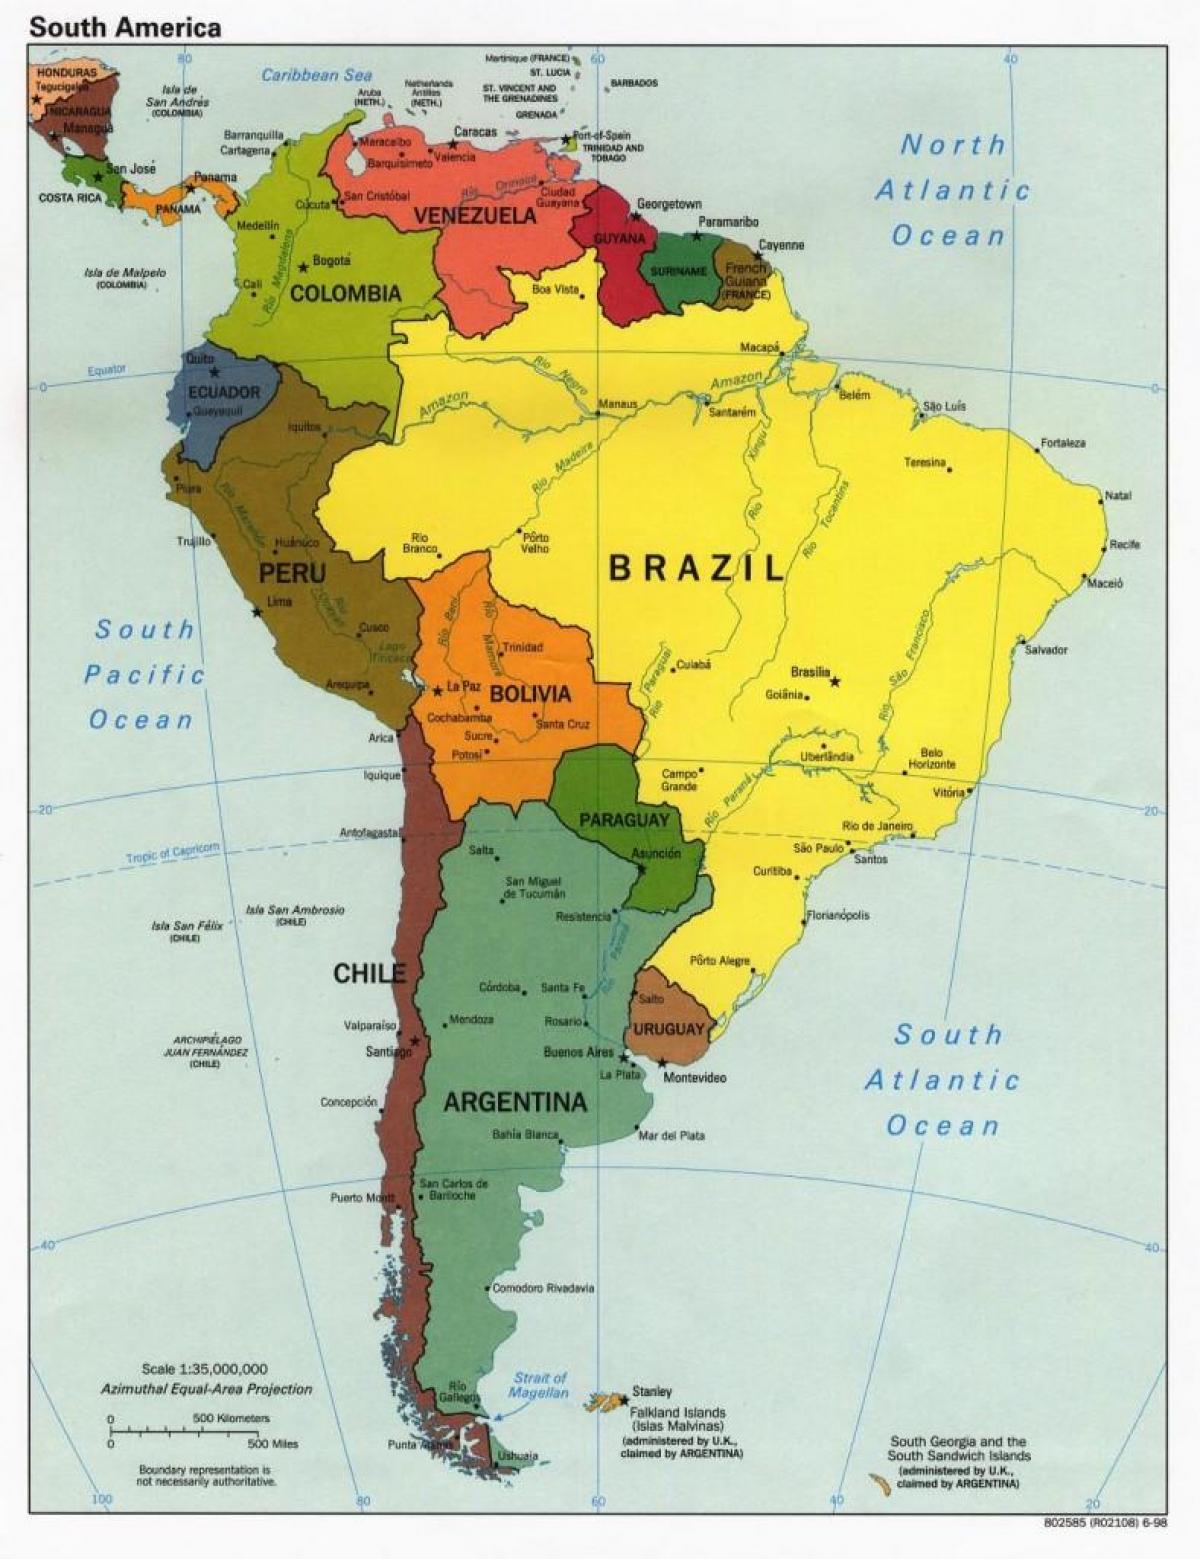 خريطة البرازيل البلدان المحيطة